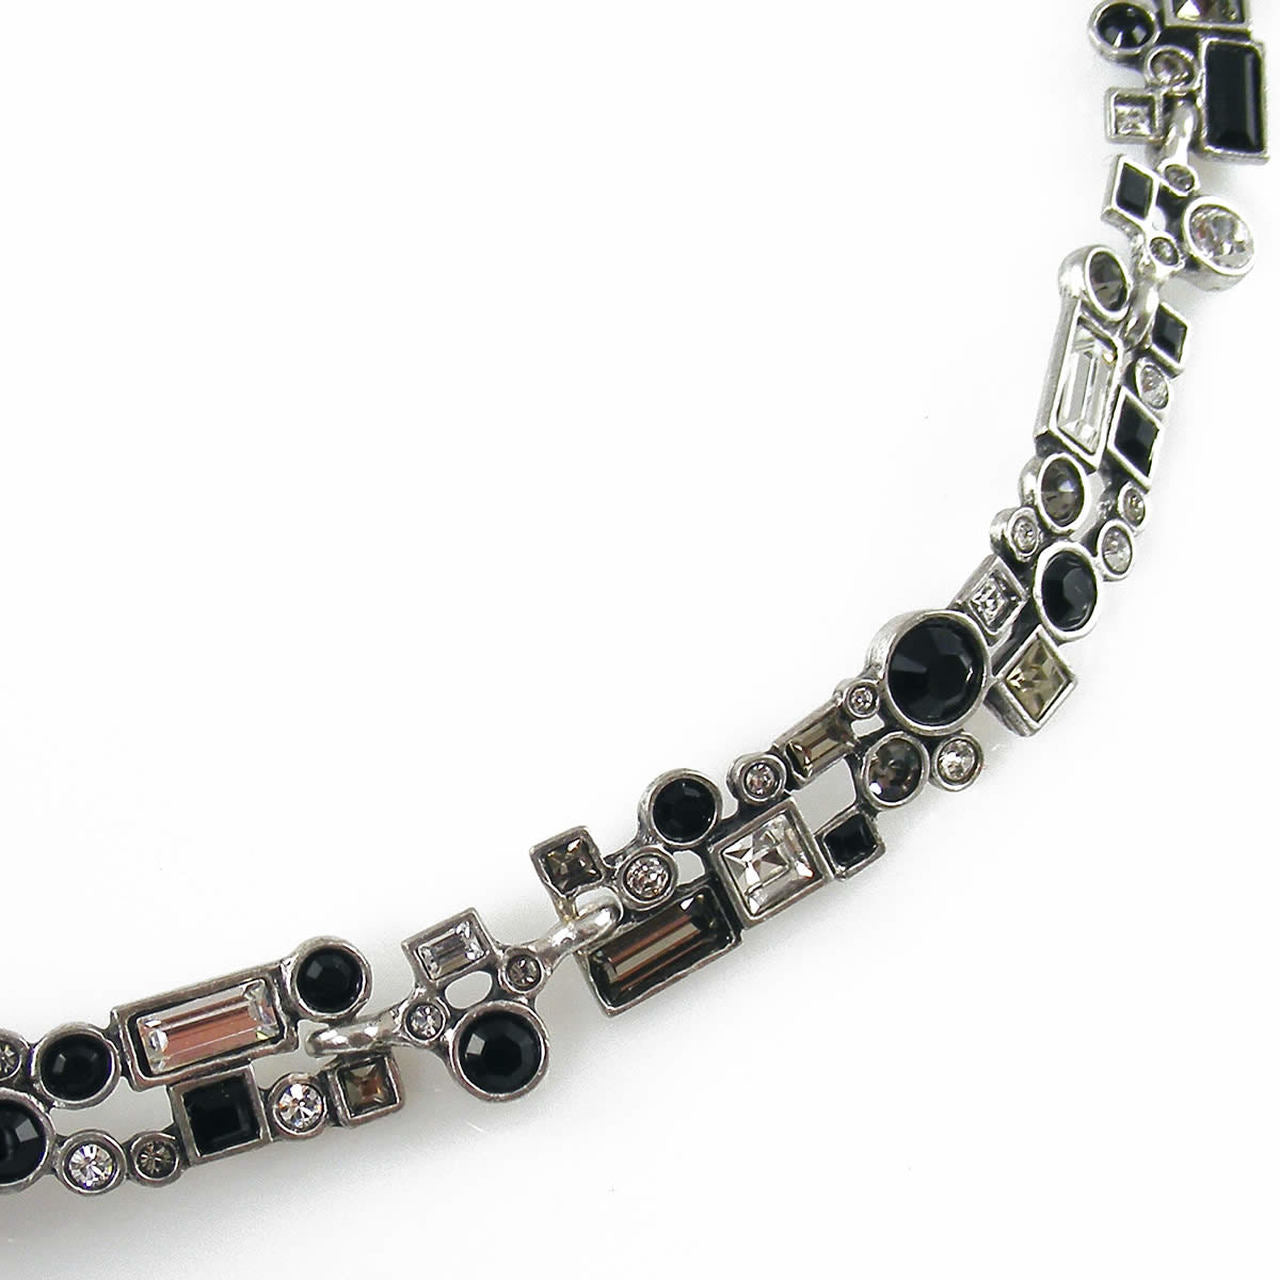 Patricia Locke Confetti Necklace in Silver, Black And White